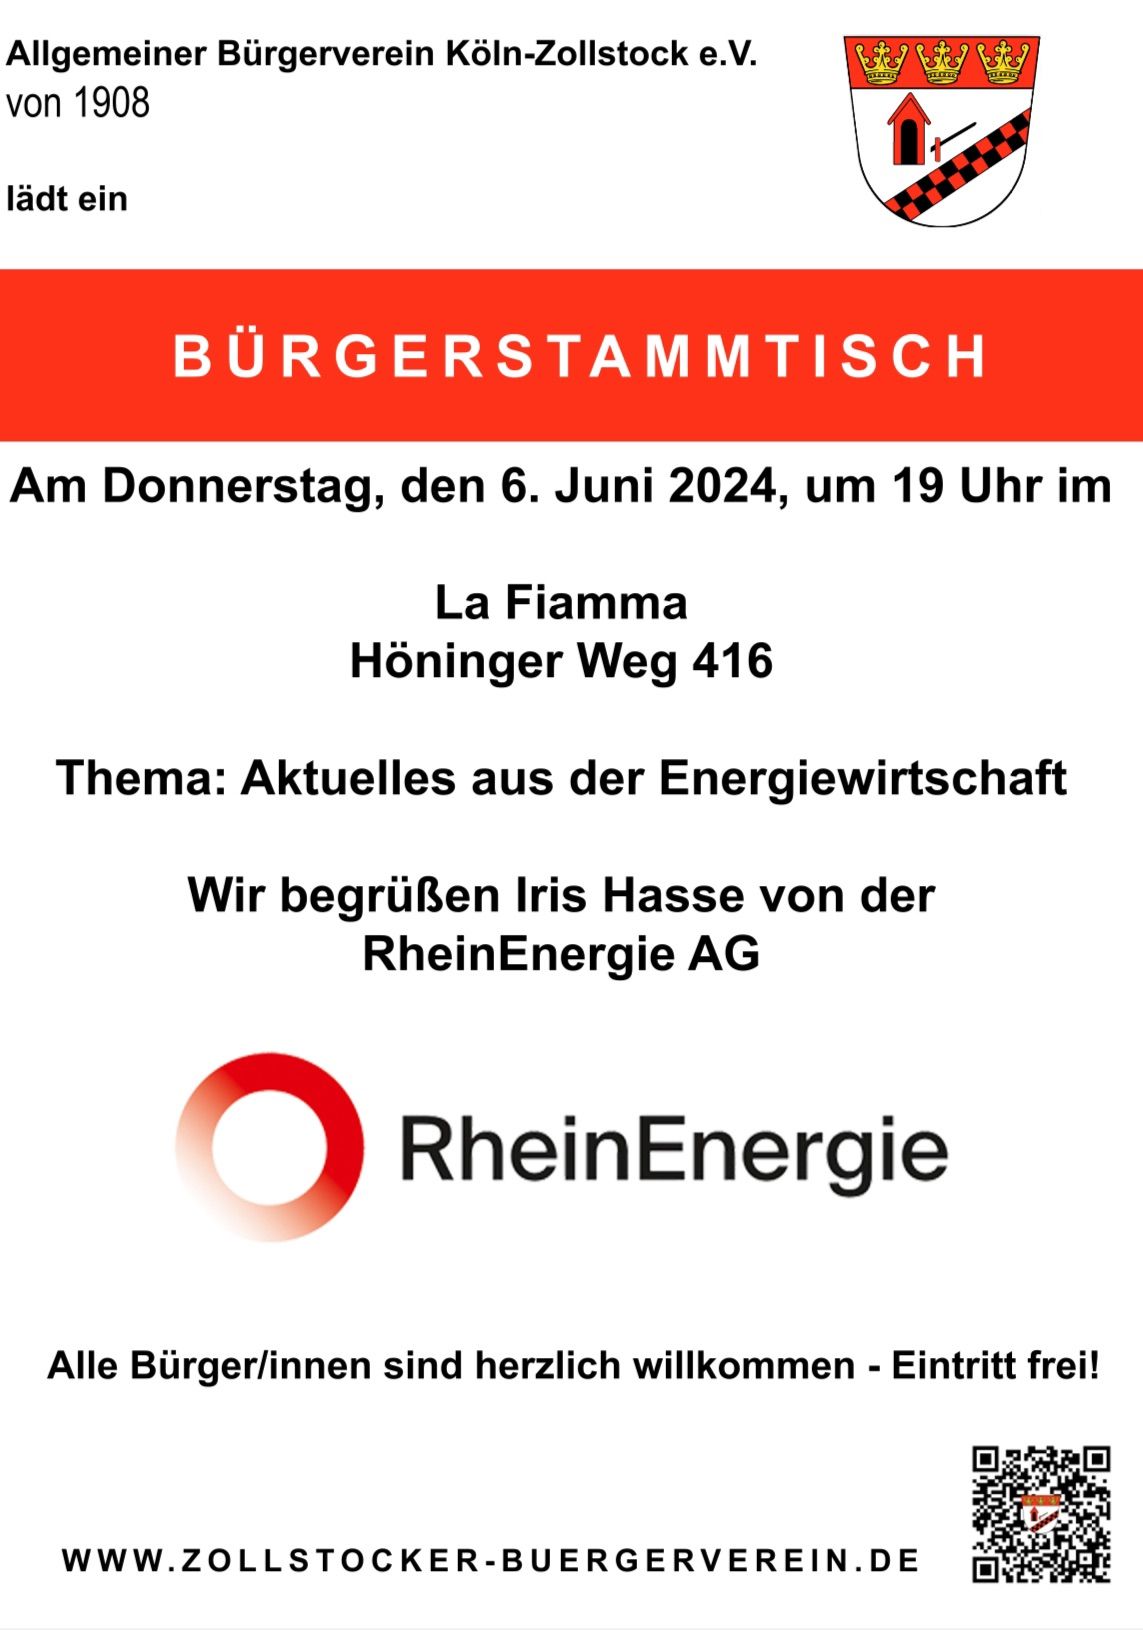 B\u00fcrgerstammtisch mit der RheinEnergie AG